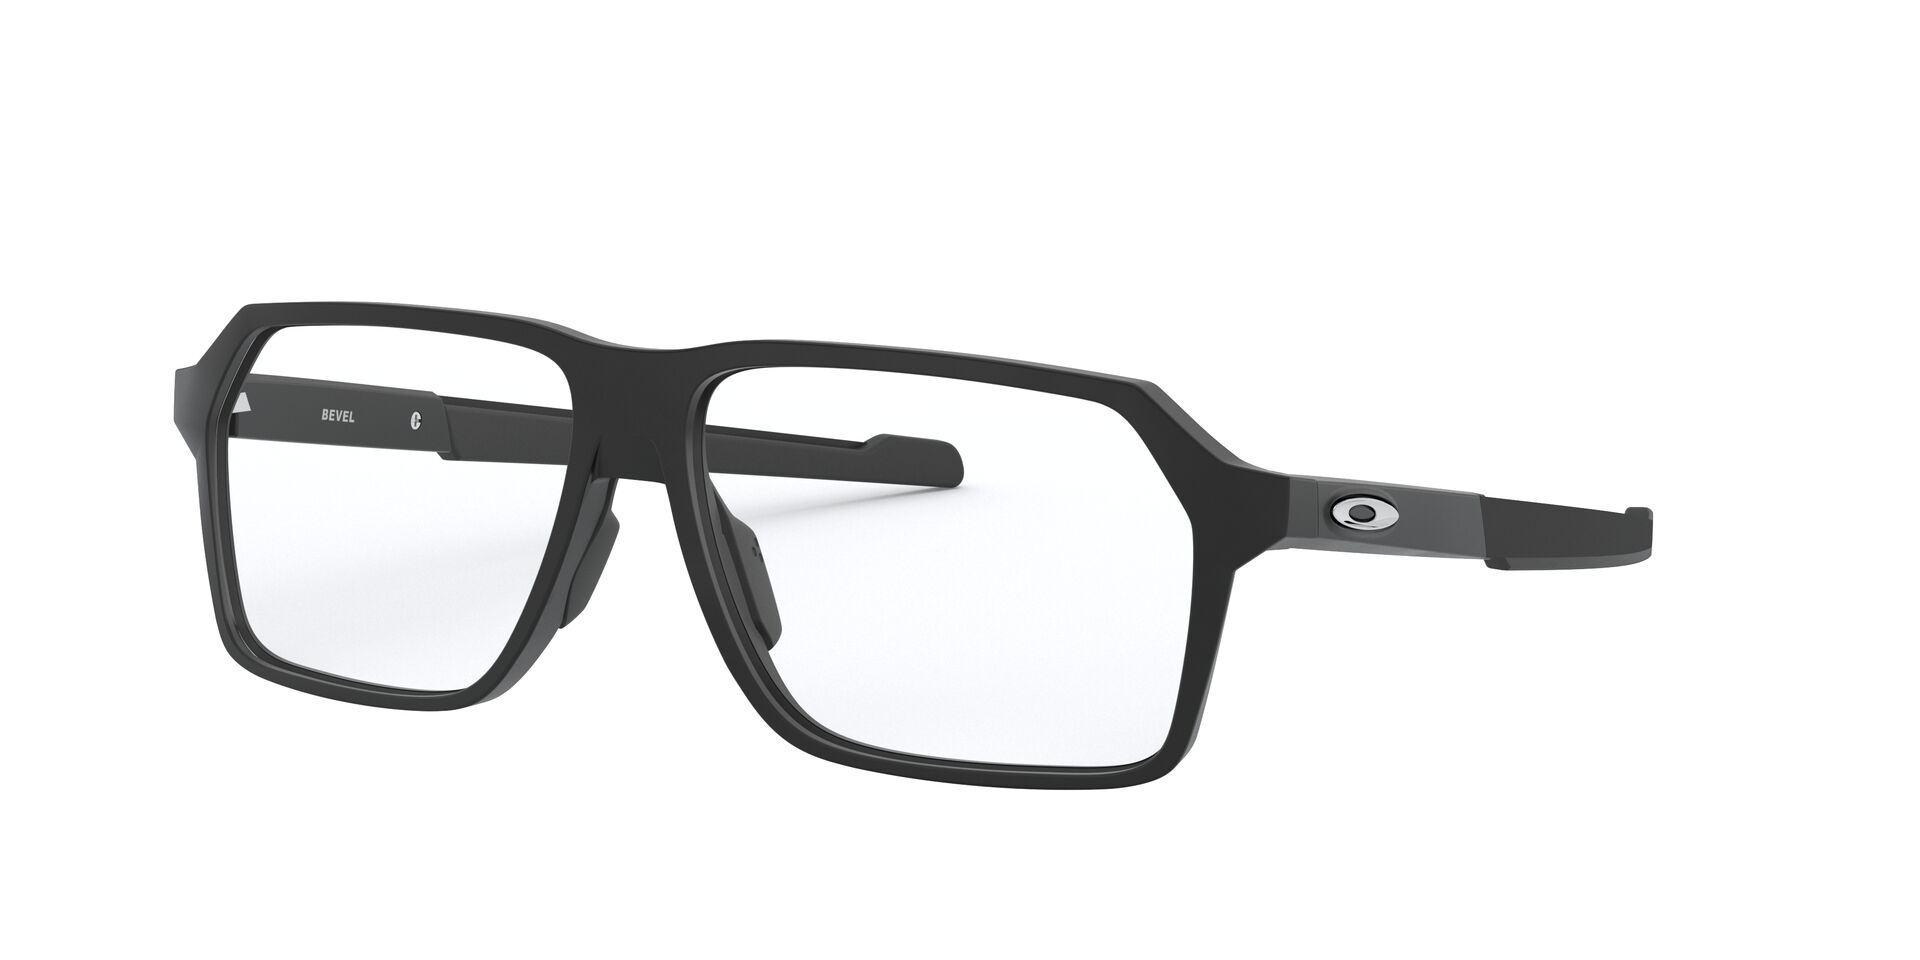 Oakley Bevel | Oakley Eyeglasses | SportRx